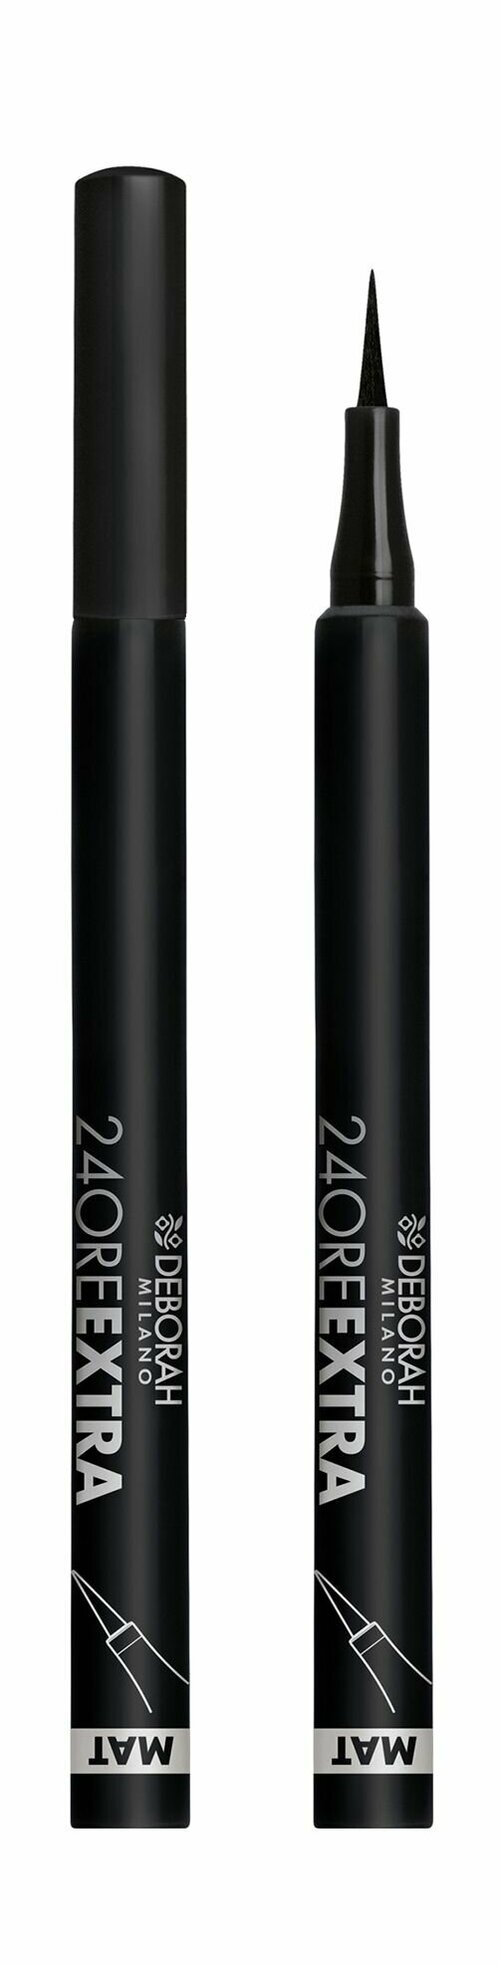 Матовая подводка для век с высокоточным аппликатором / Deborah Milano 24 Ore Extra Mat Eyeliner Pen